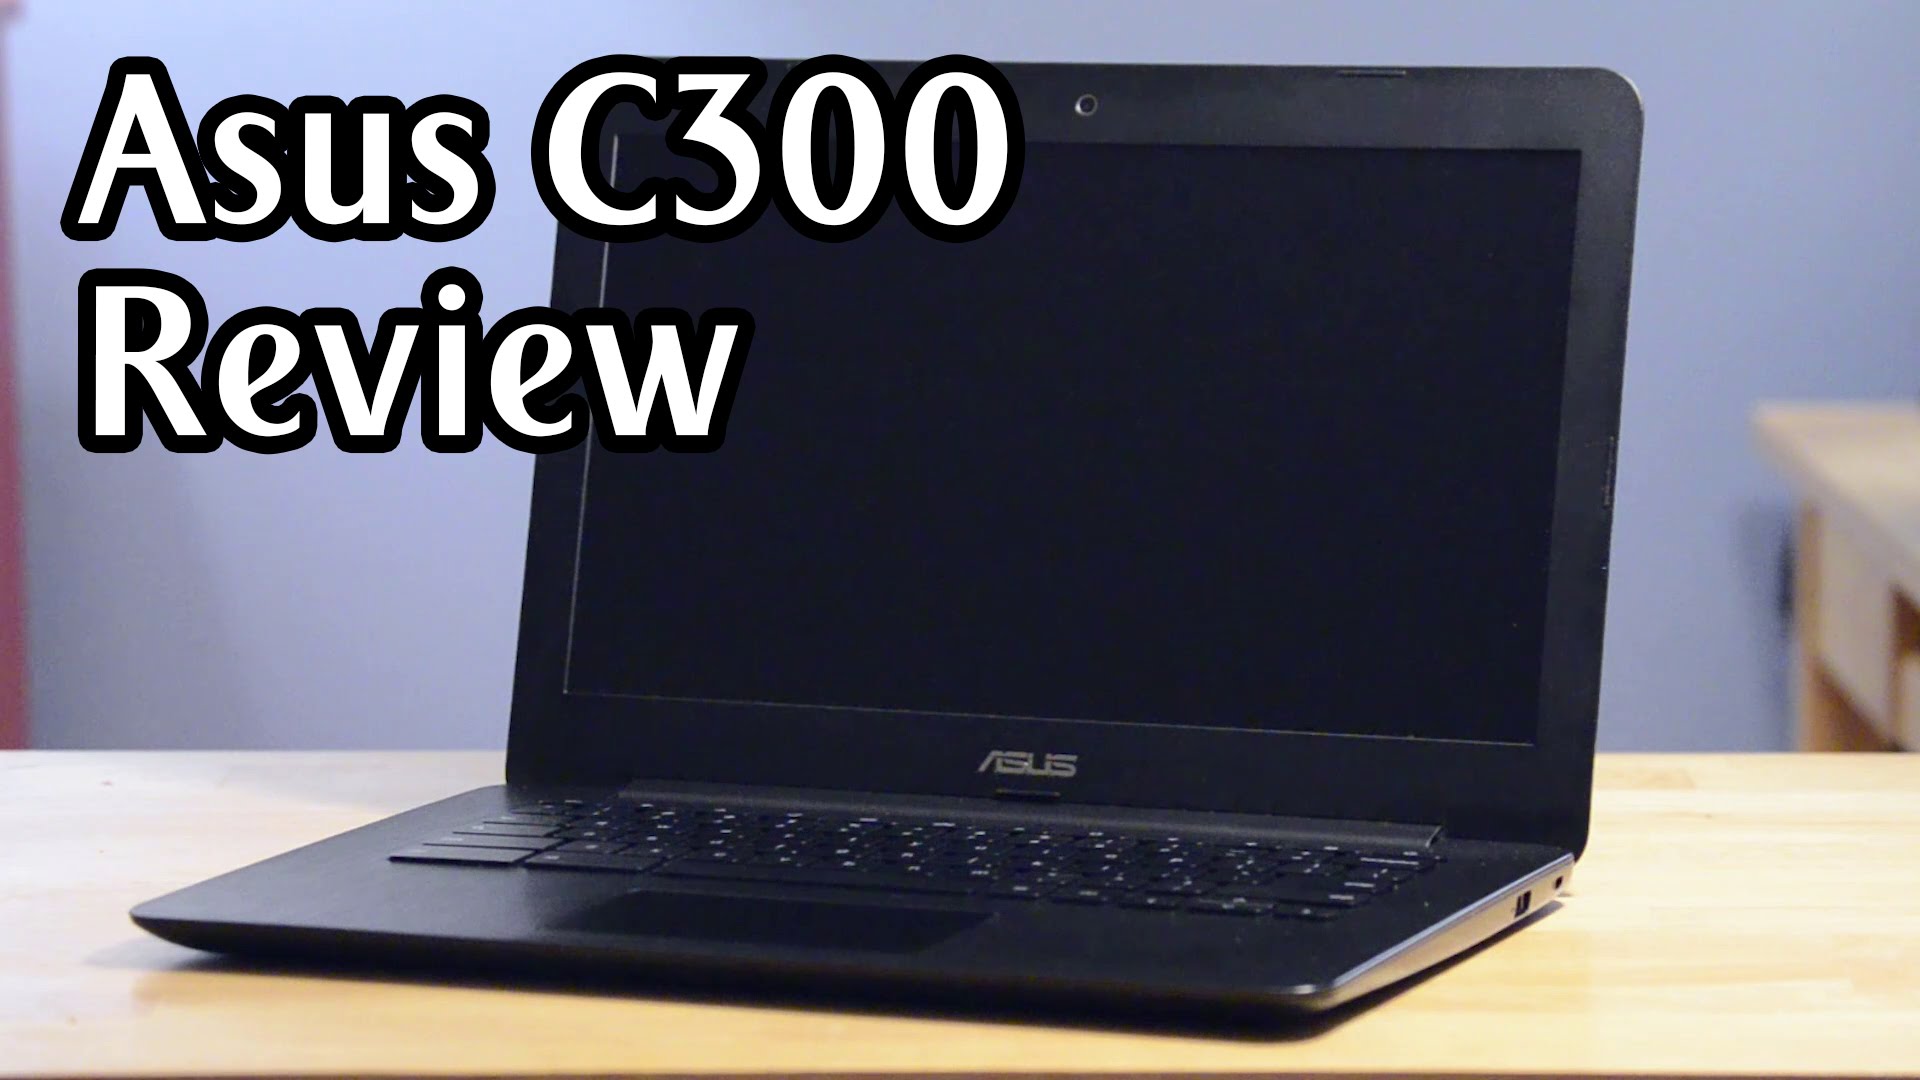 Review: Asus C300